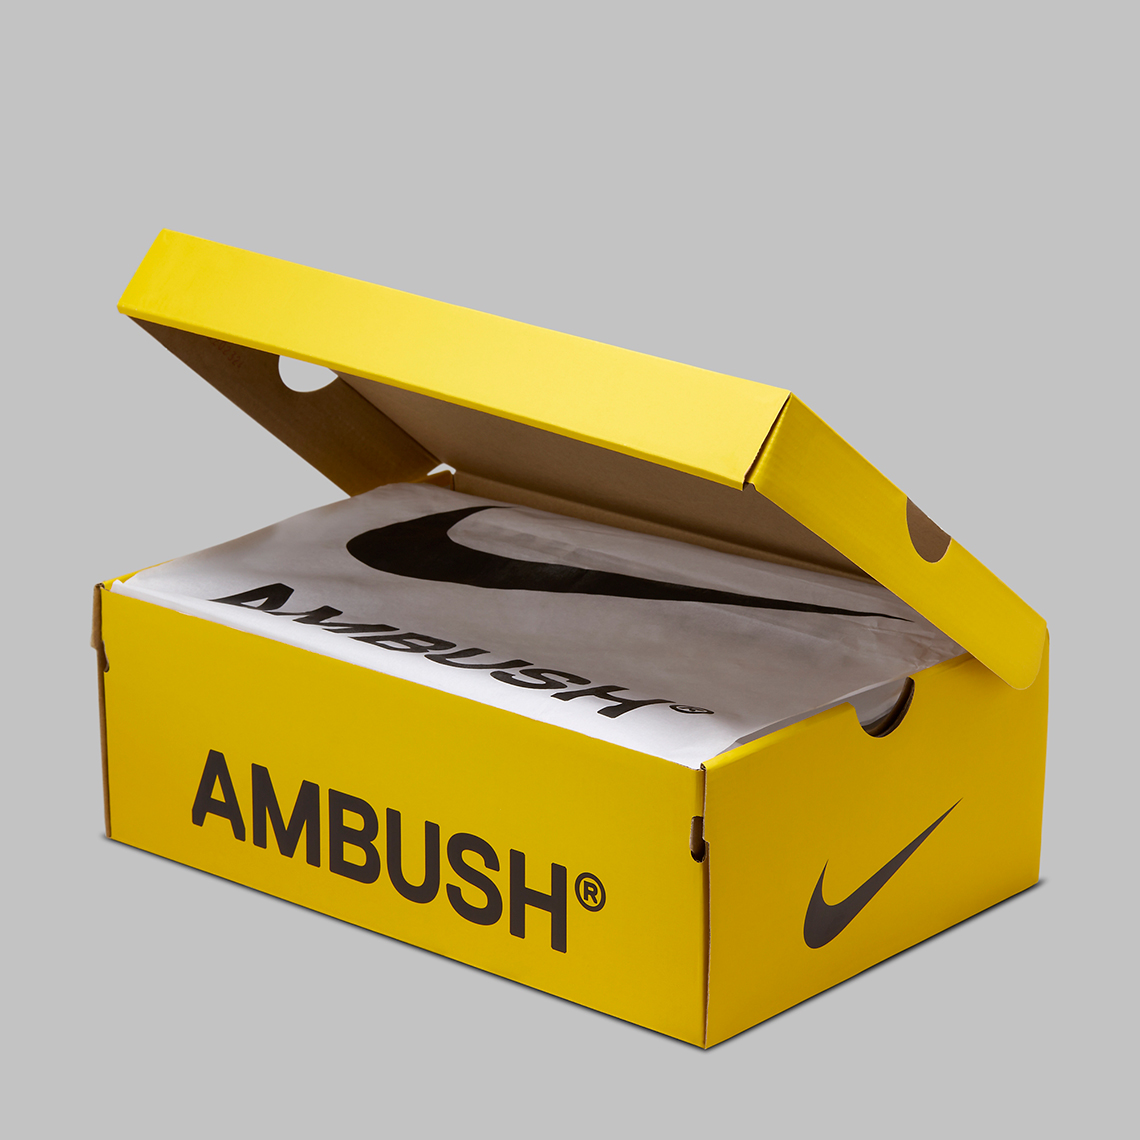 Ambush Nike Air More Uptempo Black White Fb1299 001 Release Date 8